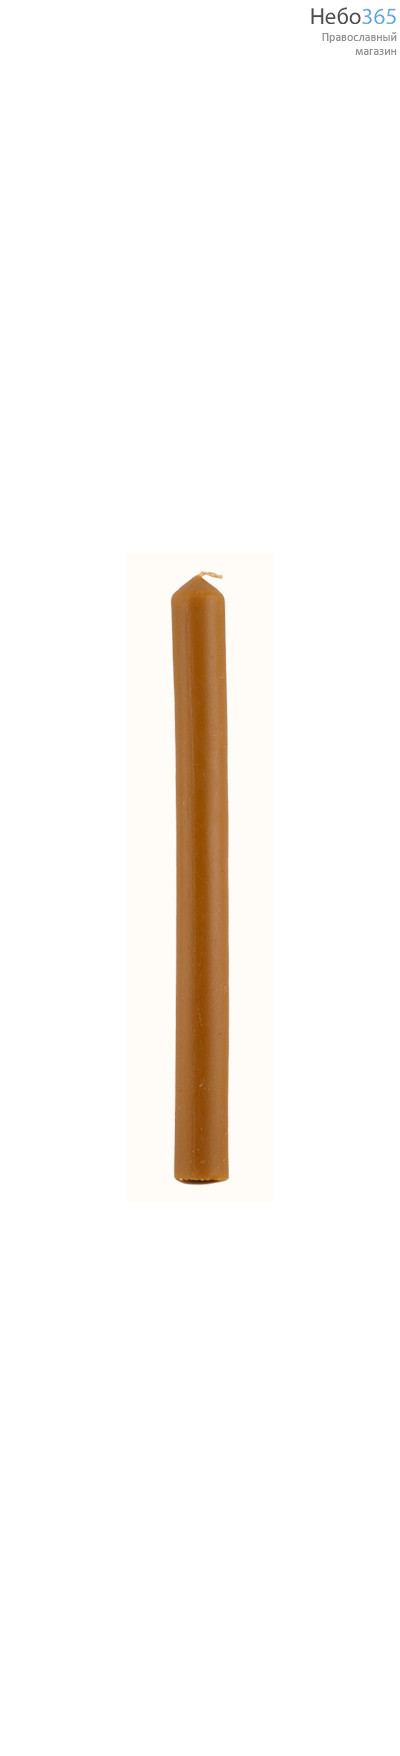  Свеча диаконская восковая, длина 38 см, фото 1 